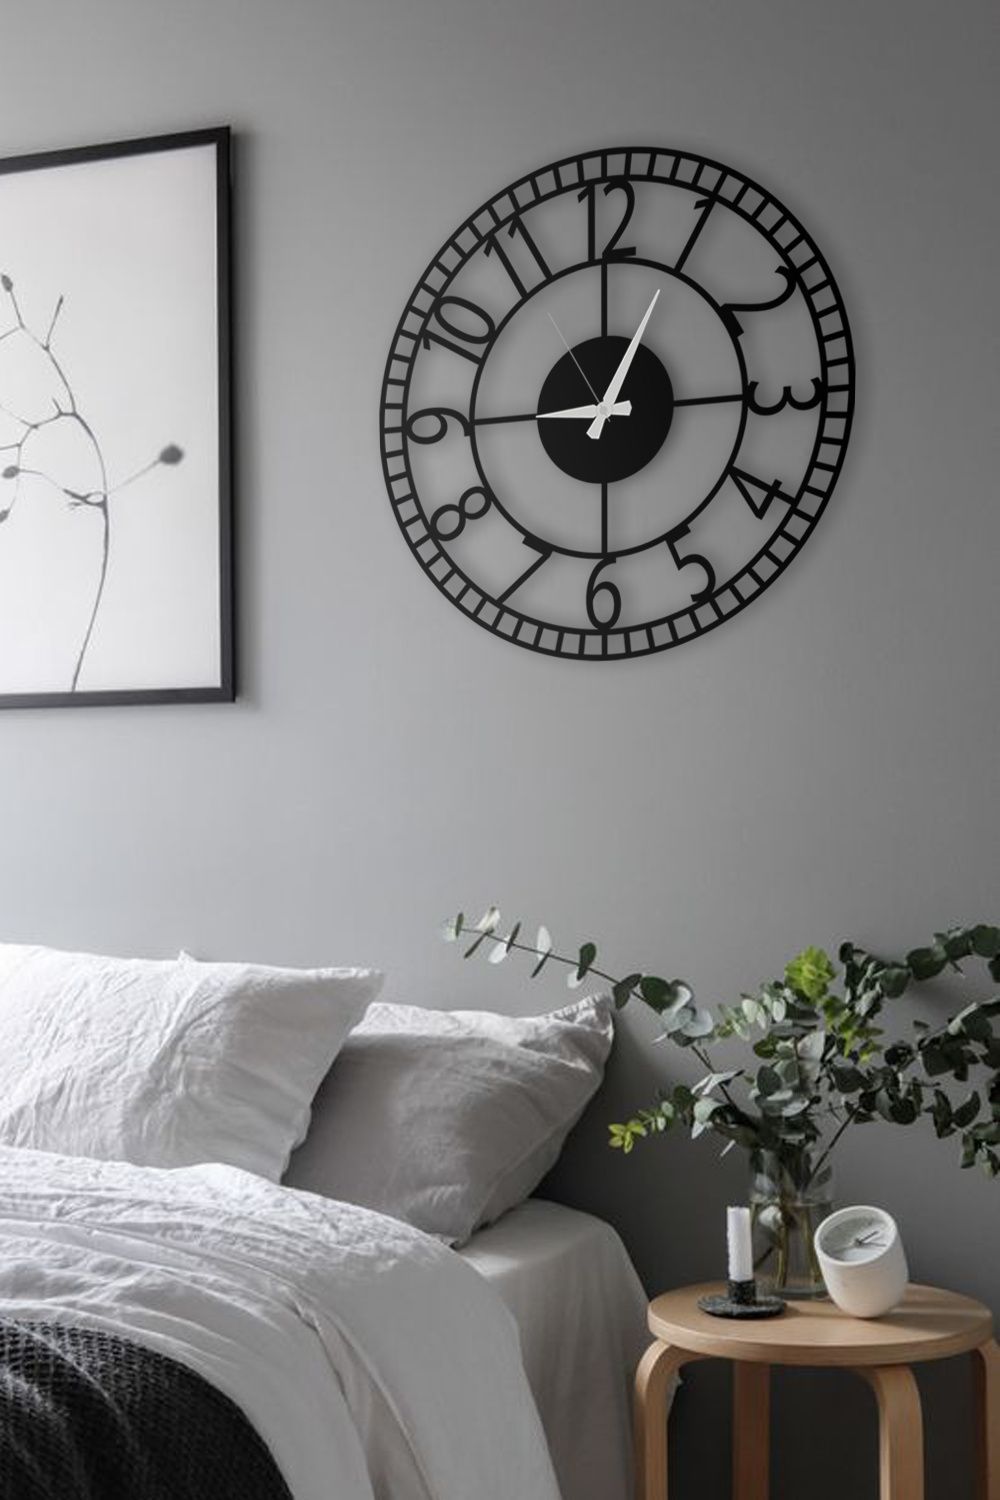 Trang trí phòng ngủ phổ biến với đồng hồ treo tường, đồng hồ để bàn